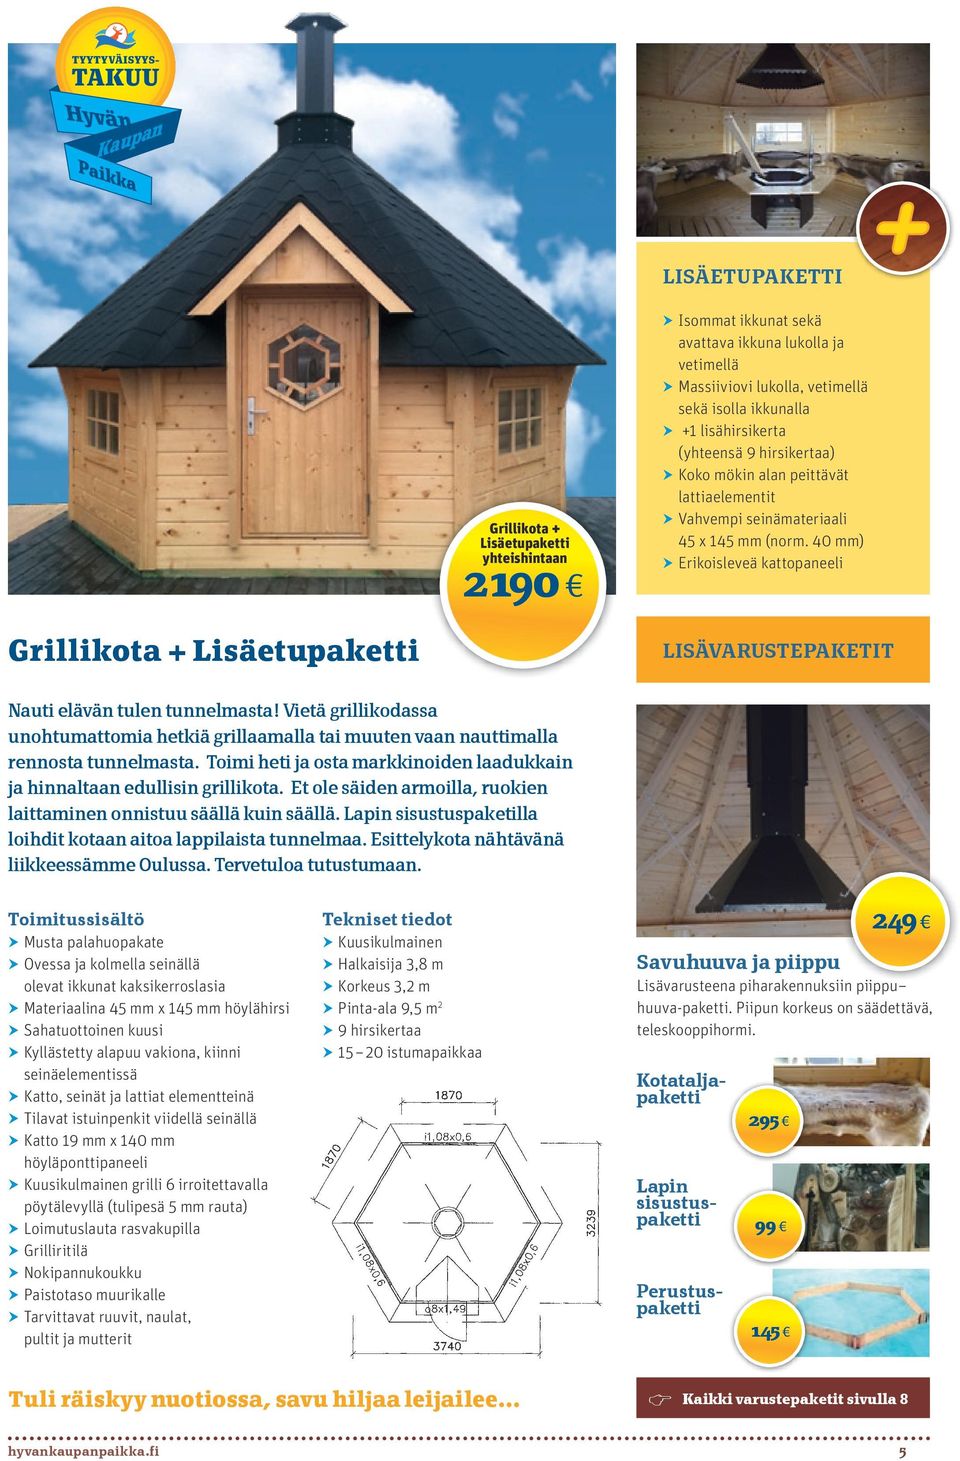 40 mm) hherikoisleveä kattopaneeli Grillikota + Lisäetupaketti lisävarustepaketit Nauti elävän tulen tunnelmasta!